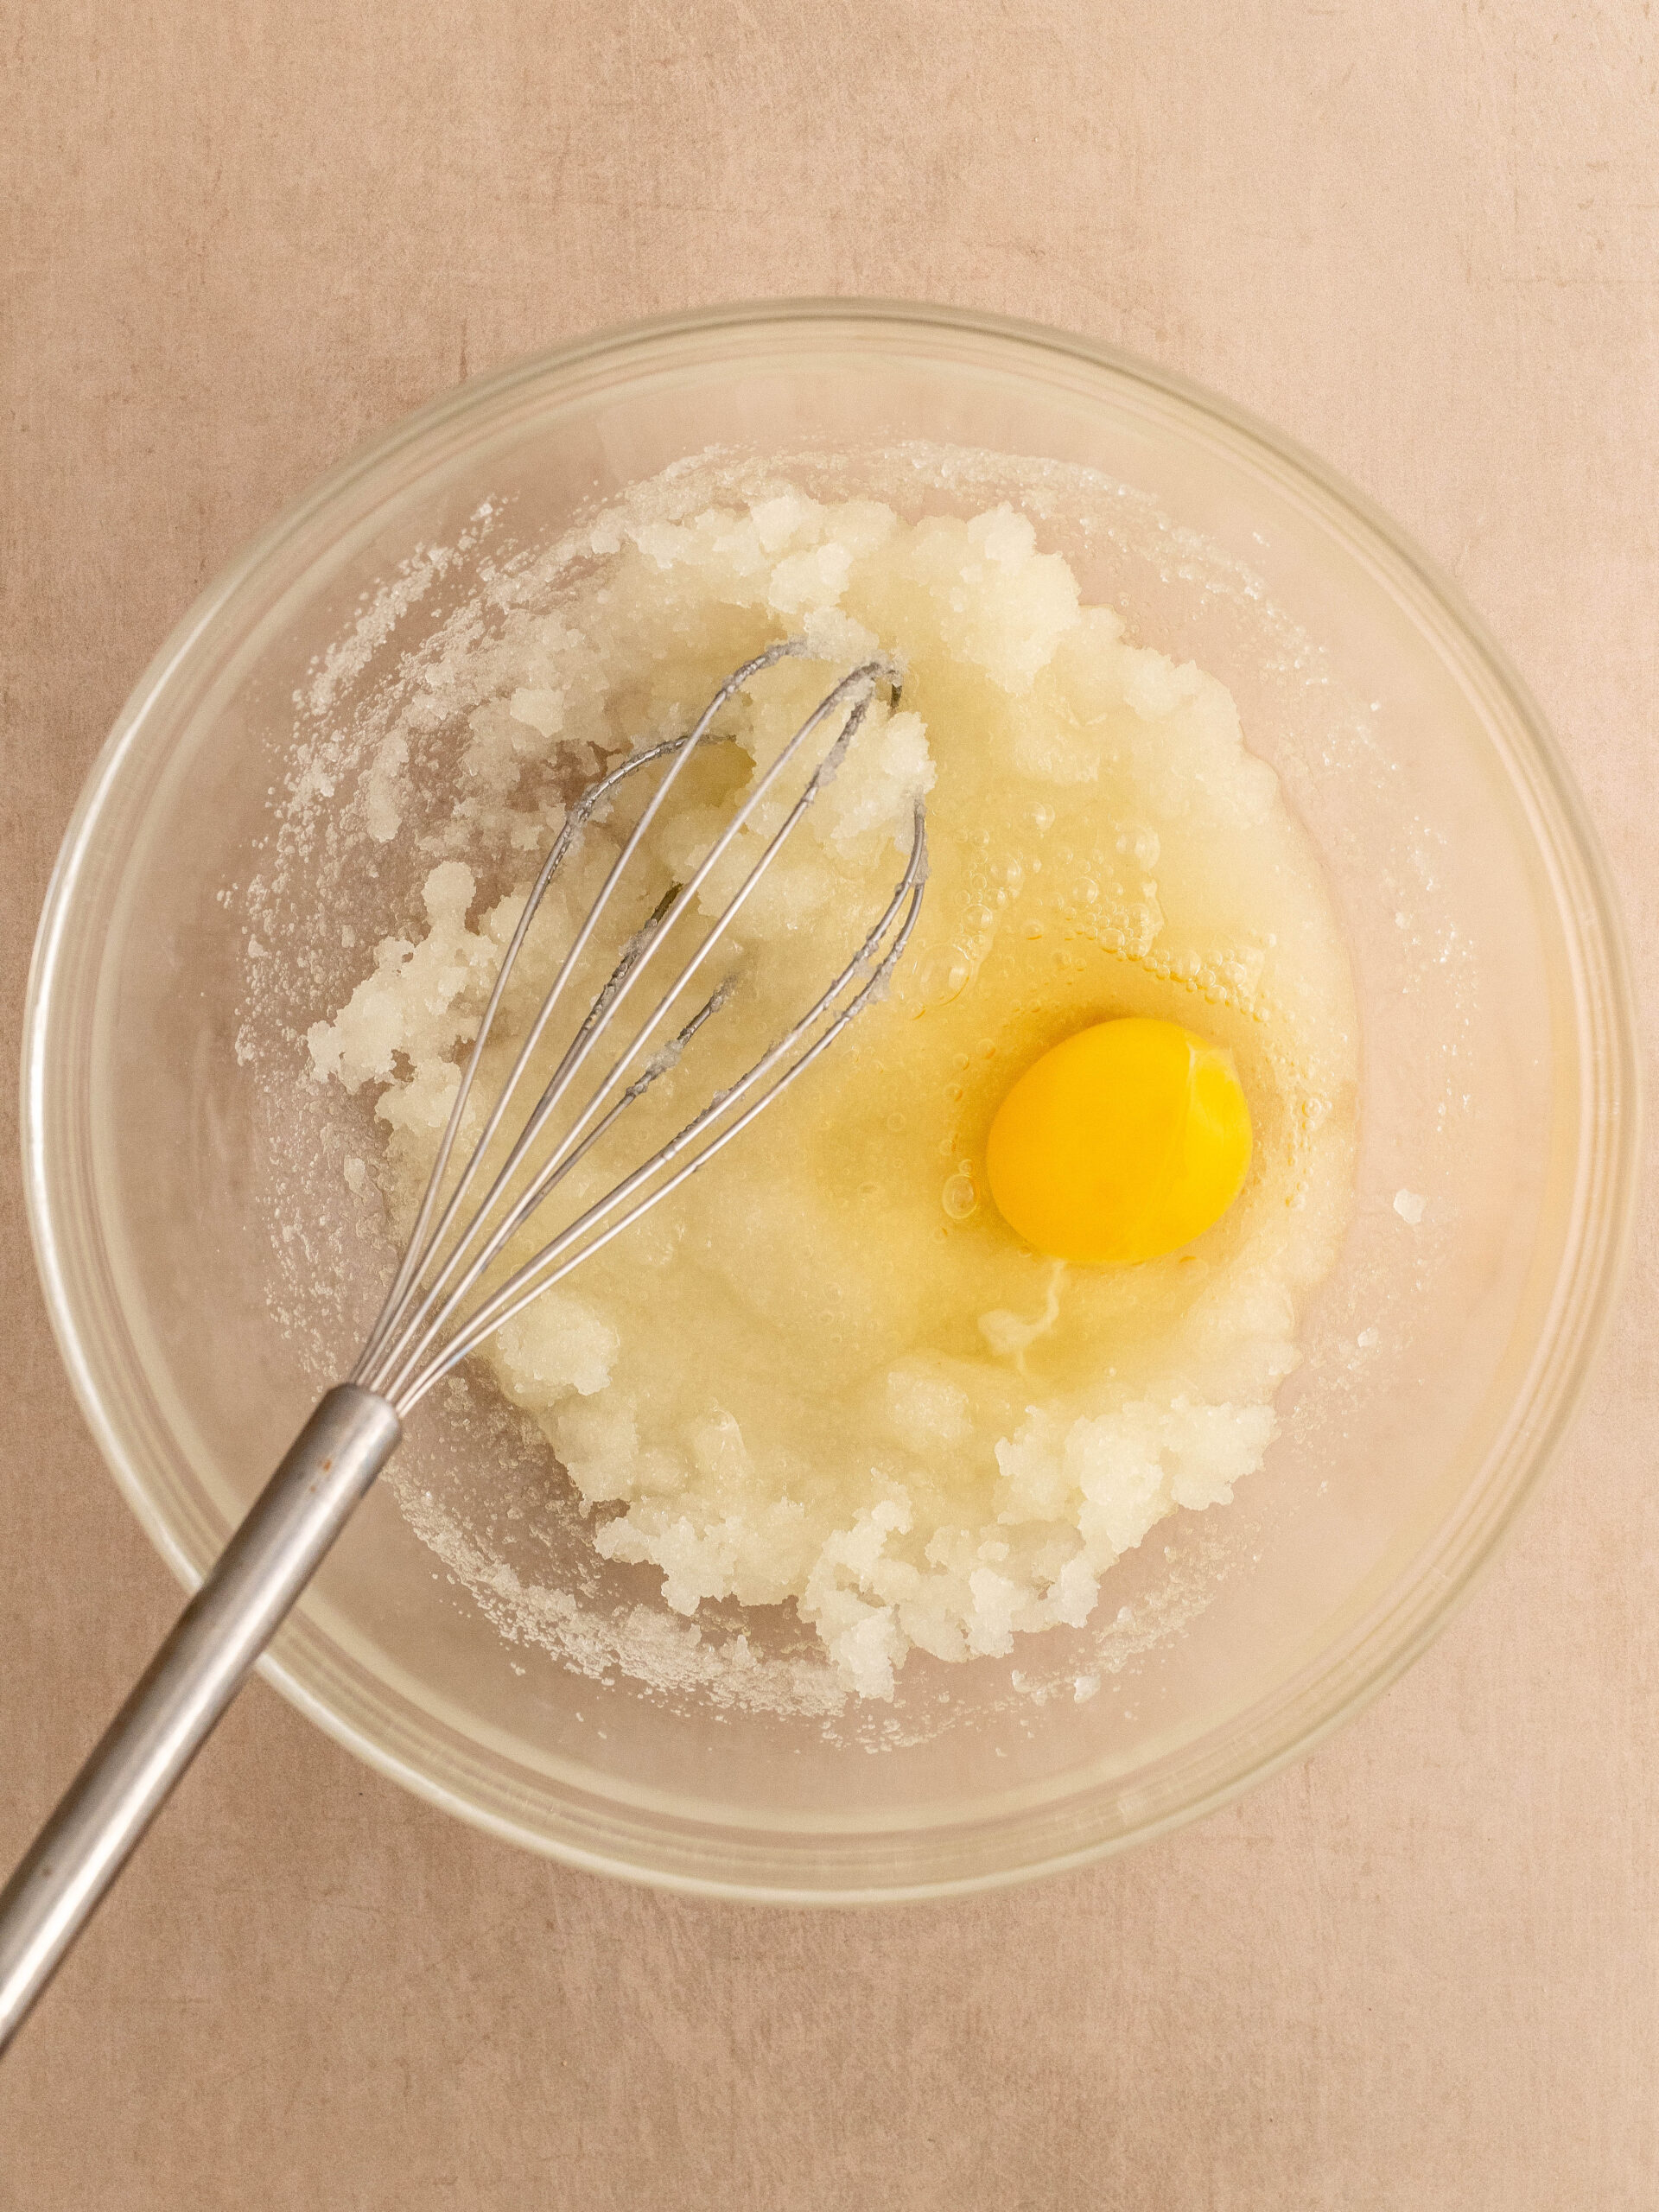 Trin 2: Tilsæt derefter et æg, og pisk det i.